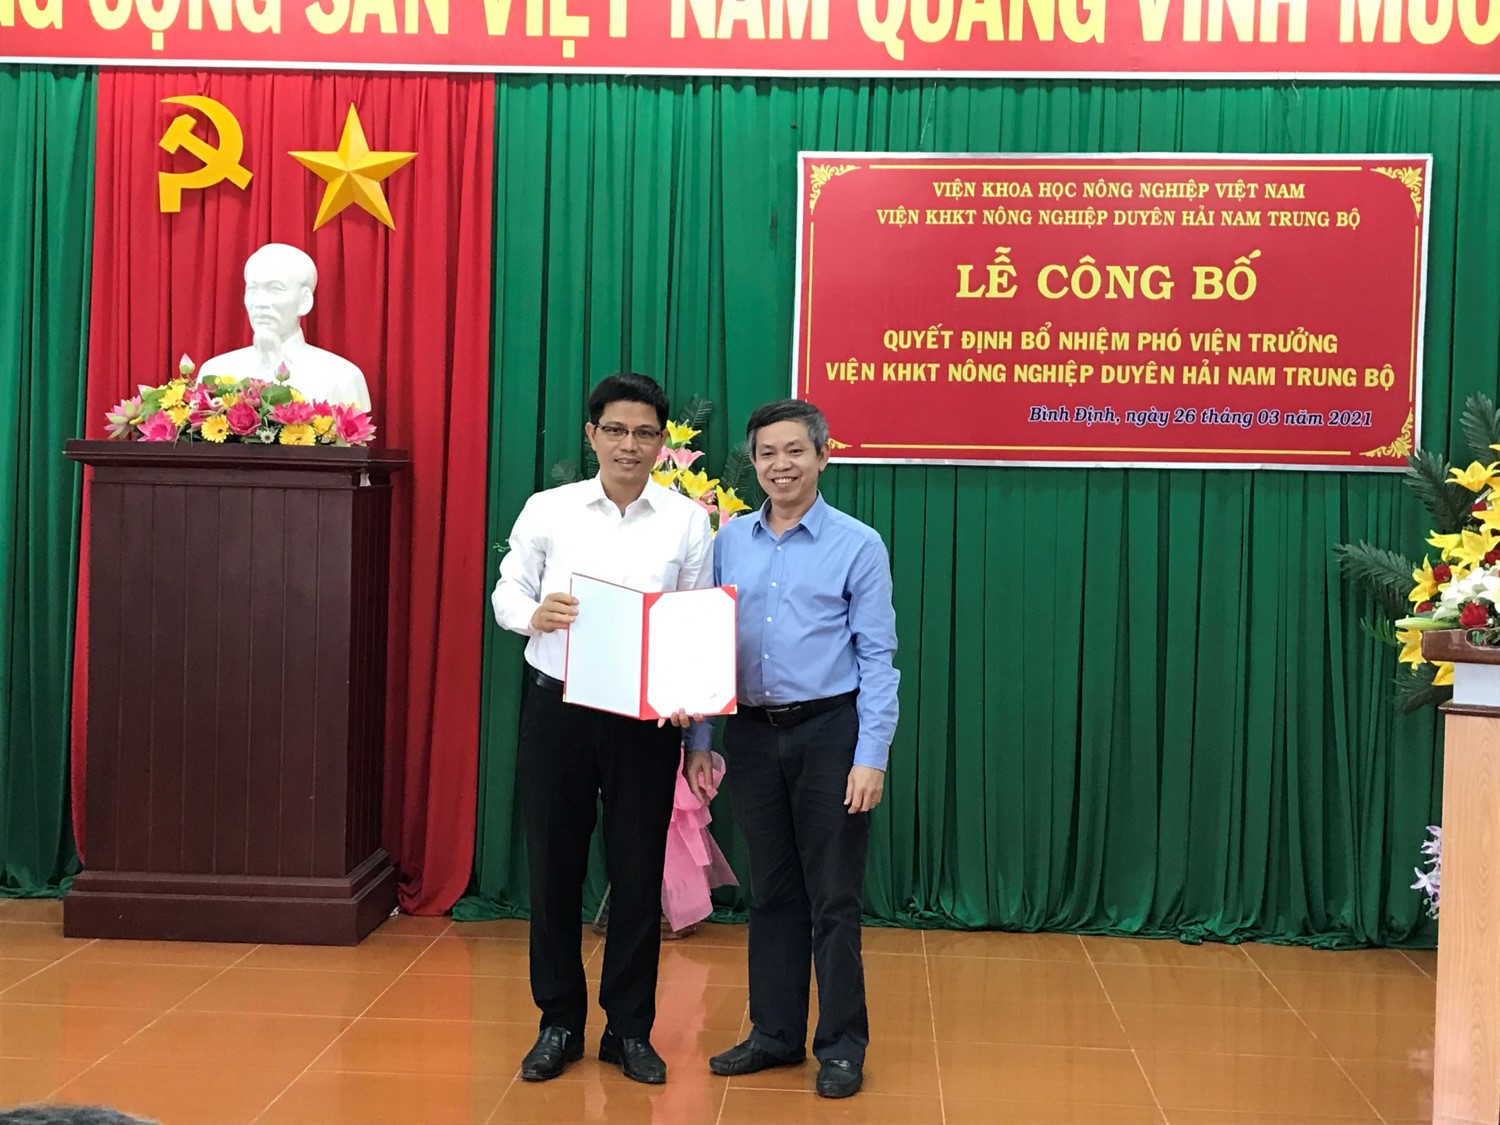  Lễ công bố Quyết định bổ nhiệm Tiến sĩ Vũ Văn Khuê giữ chức vụ Phó Viện Trưởng